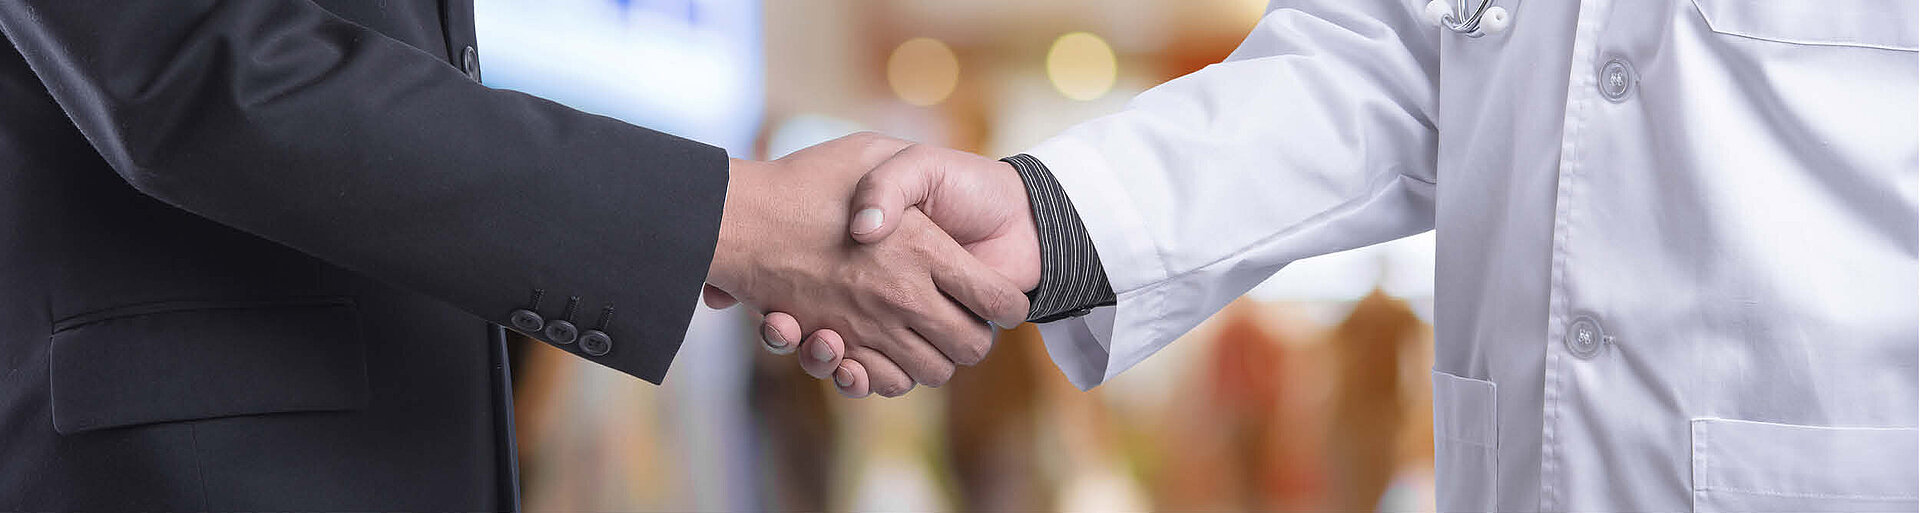 Servicegesellschaften: Bild zeigt einen Handschlag zwischen einer Person im Anzug und einer Person im Arztkittel